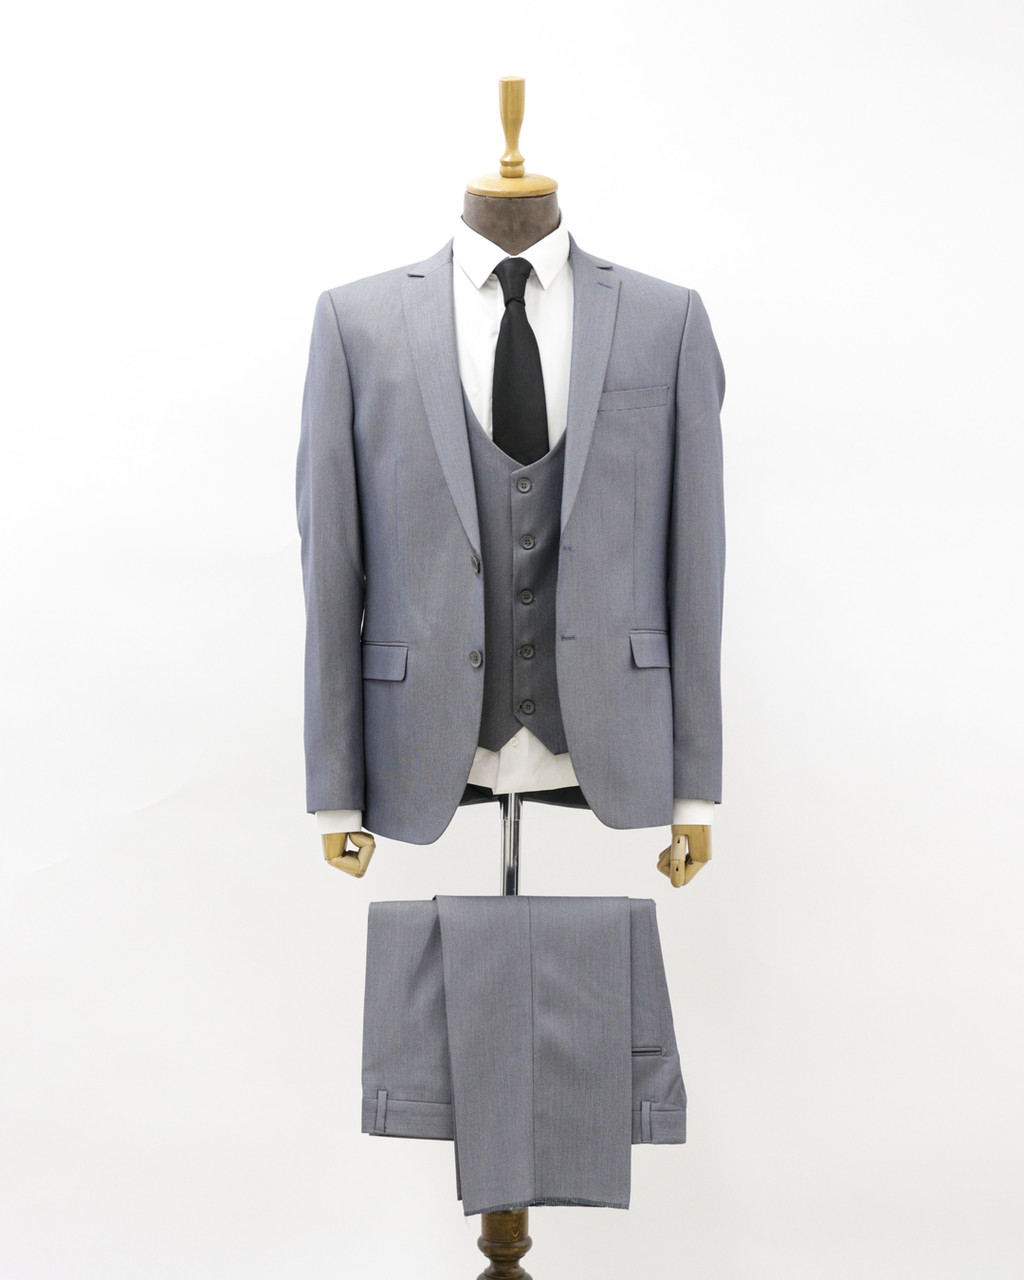 Мужской деловой костюм «UM&H 24595902» серый, фото 1